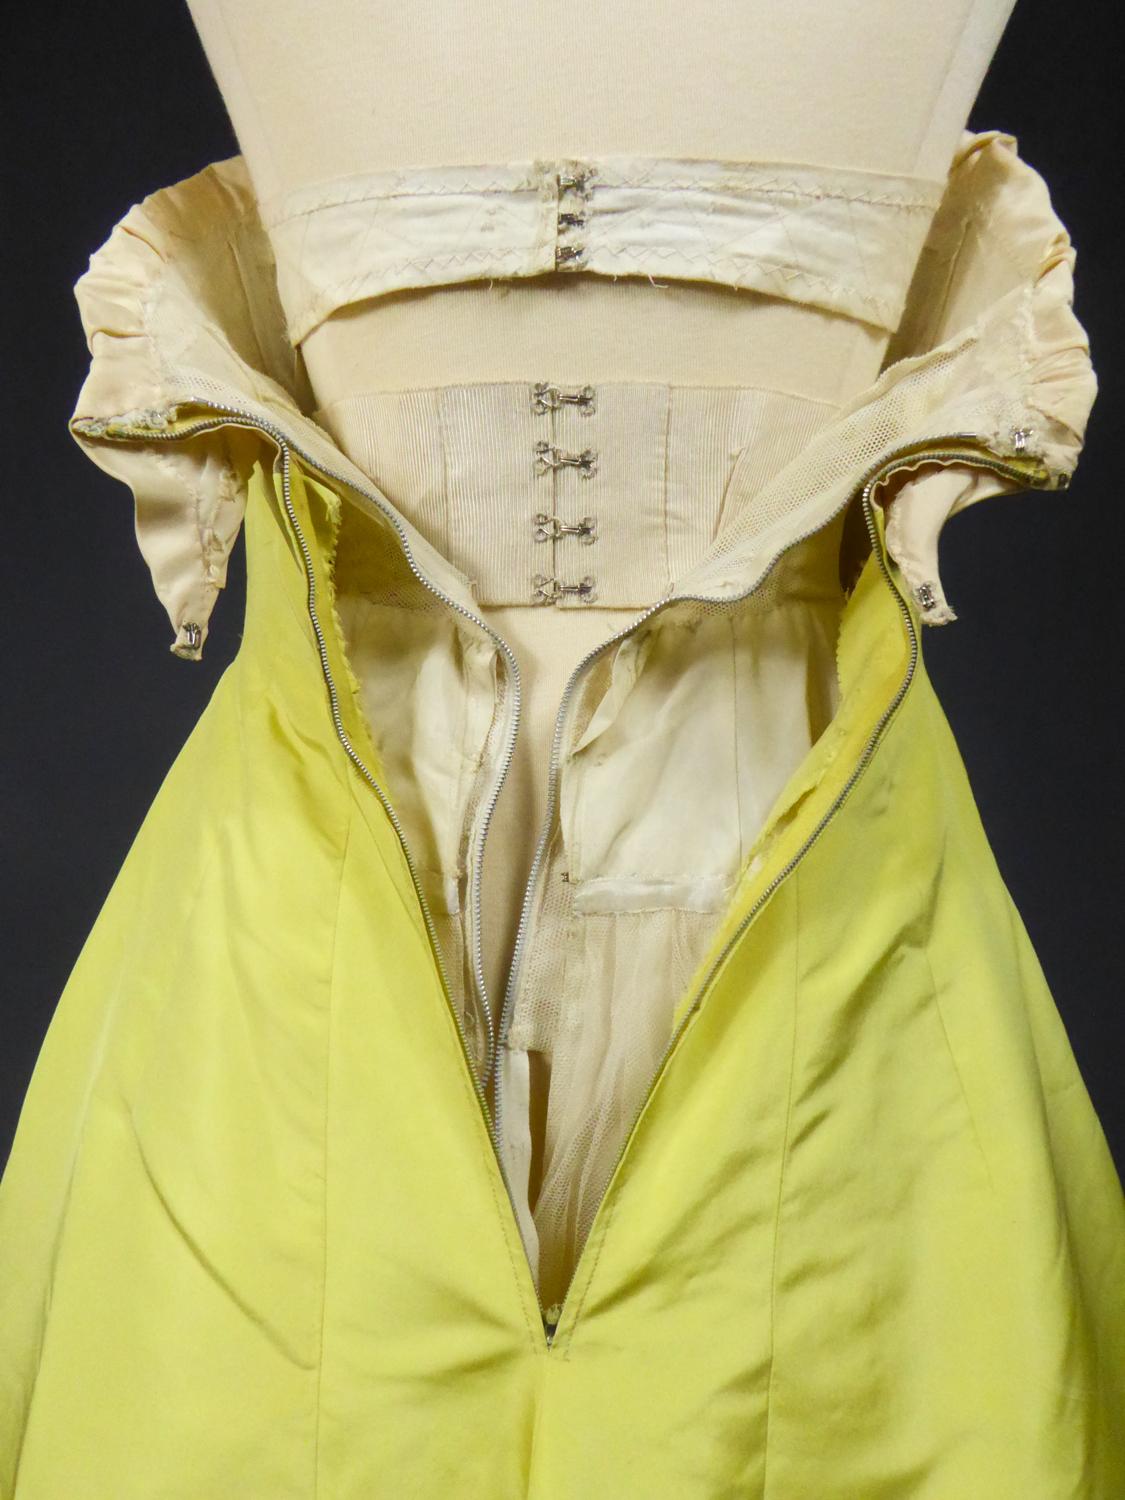 A Pierre Balmain Ottoman Silk Faille Couture Ball-Gown N° 83213 Paris Circa 1958 For Sale 1